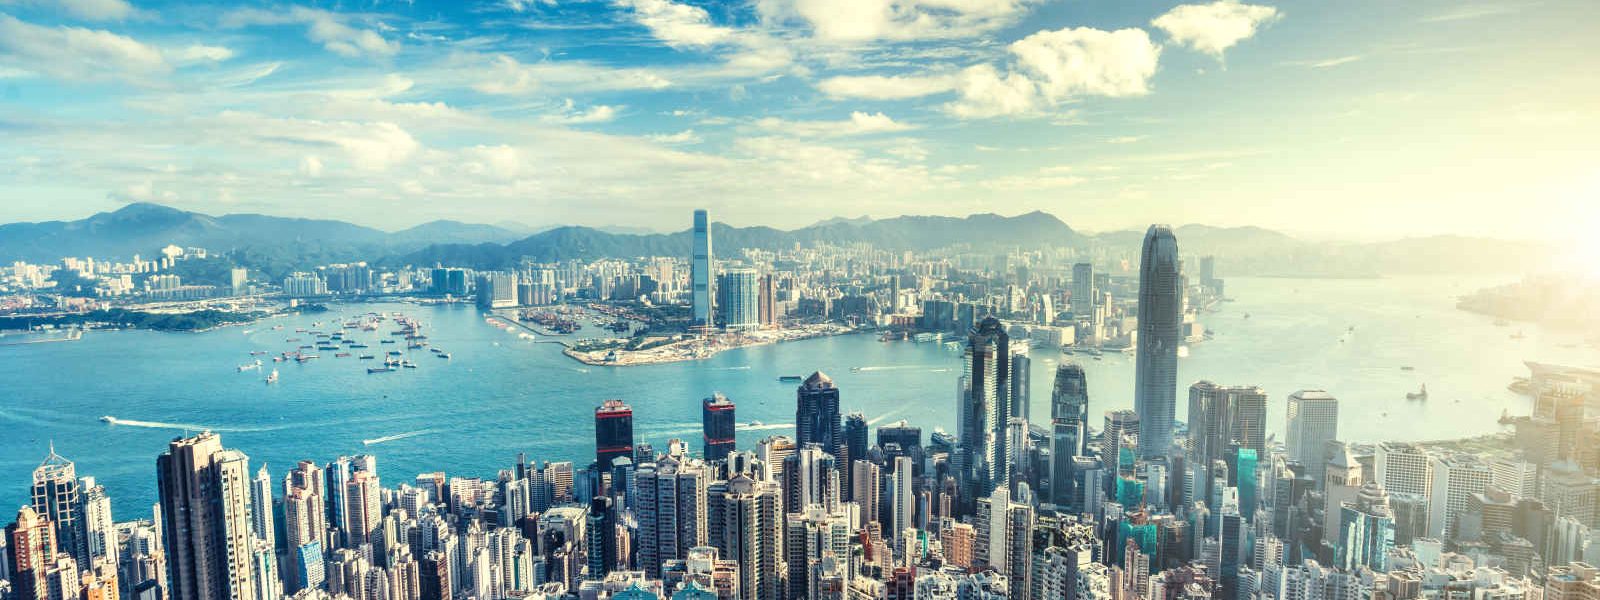 Skyline de Hong Kong, Chine